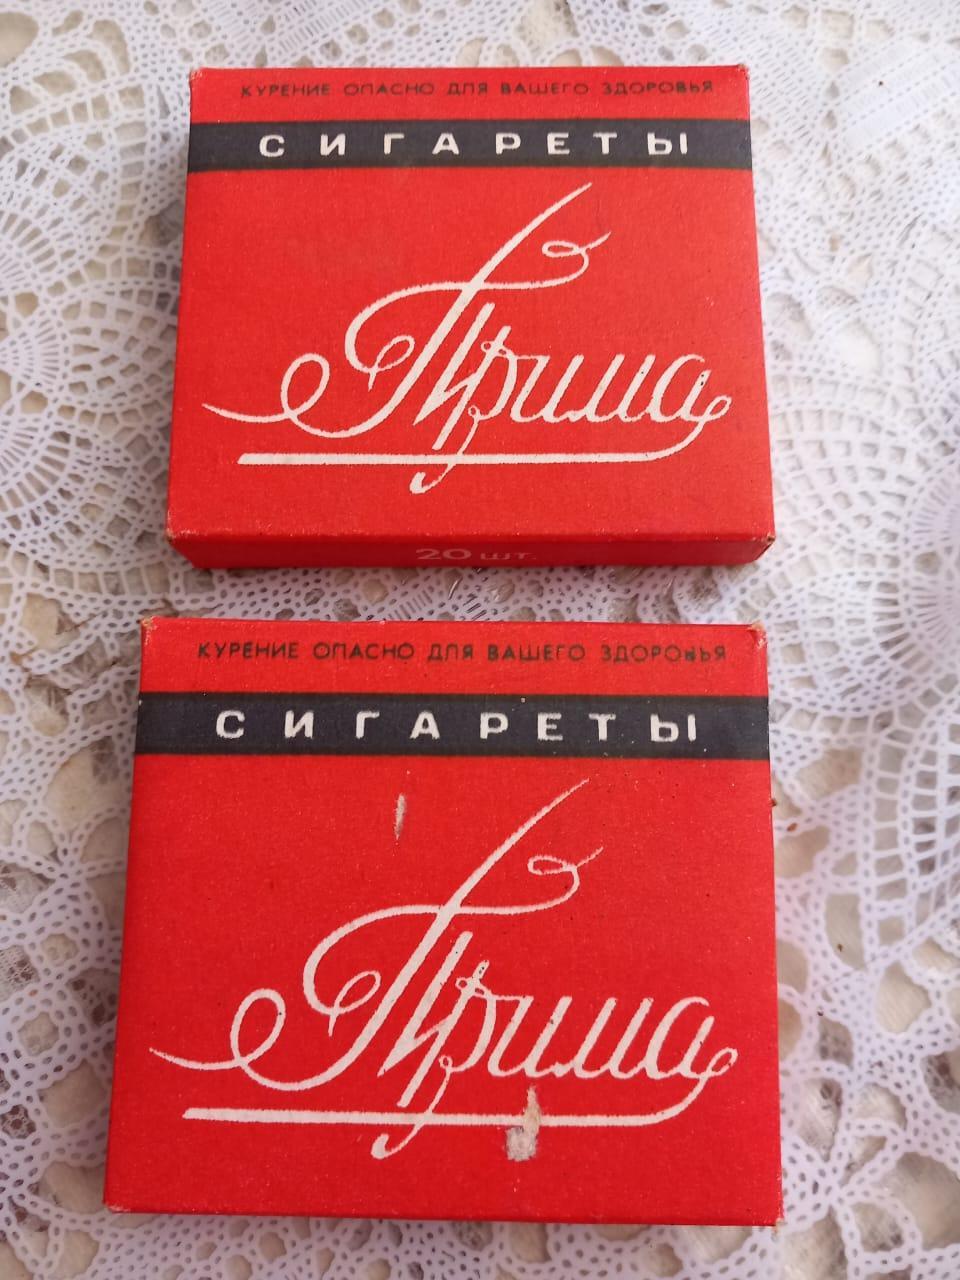 Сигаретные пачки Прима Курск СССР ГОСТ 1981 года целые винтаж ретро